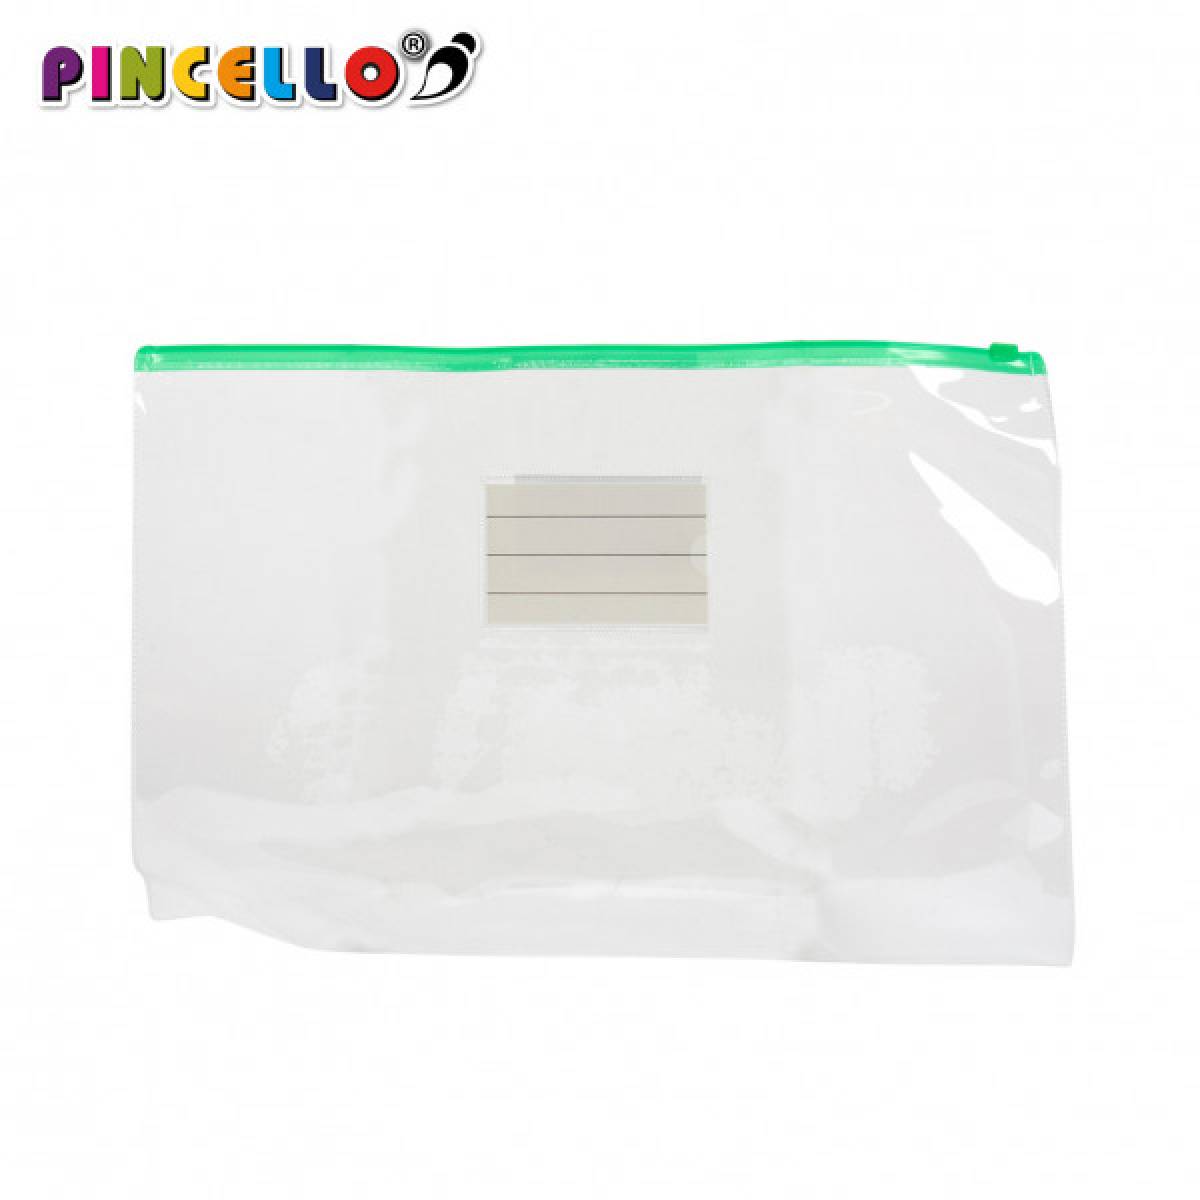 Plic plastic Pincello cu fermoar 35,5x1x24cm